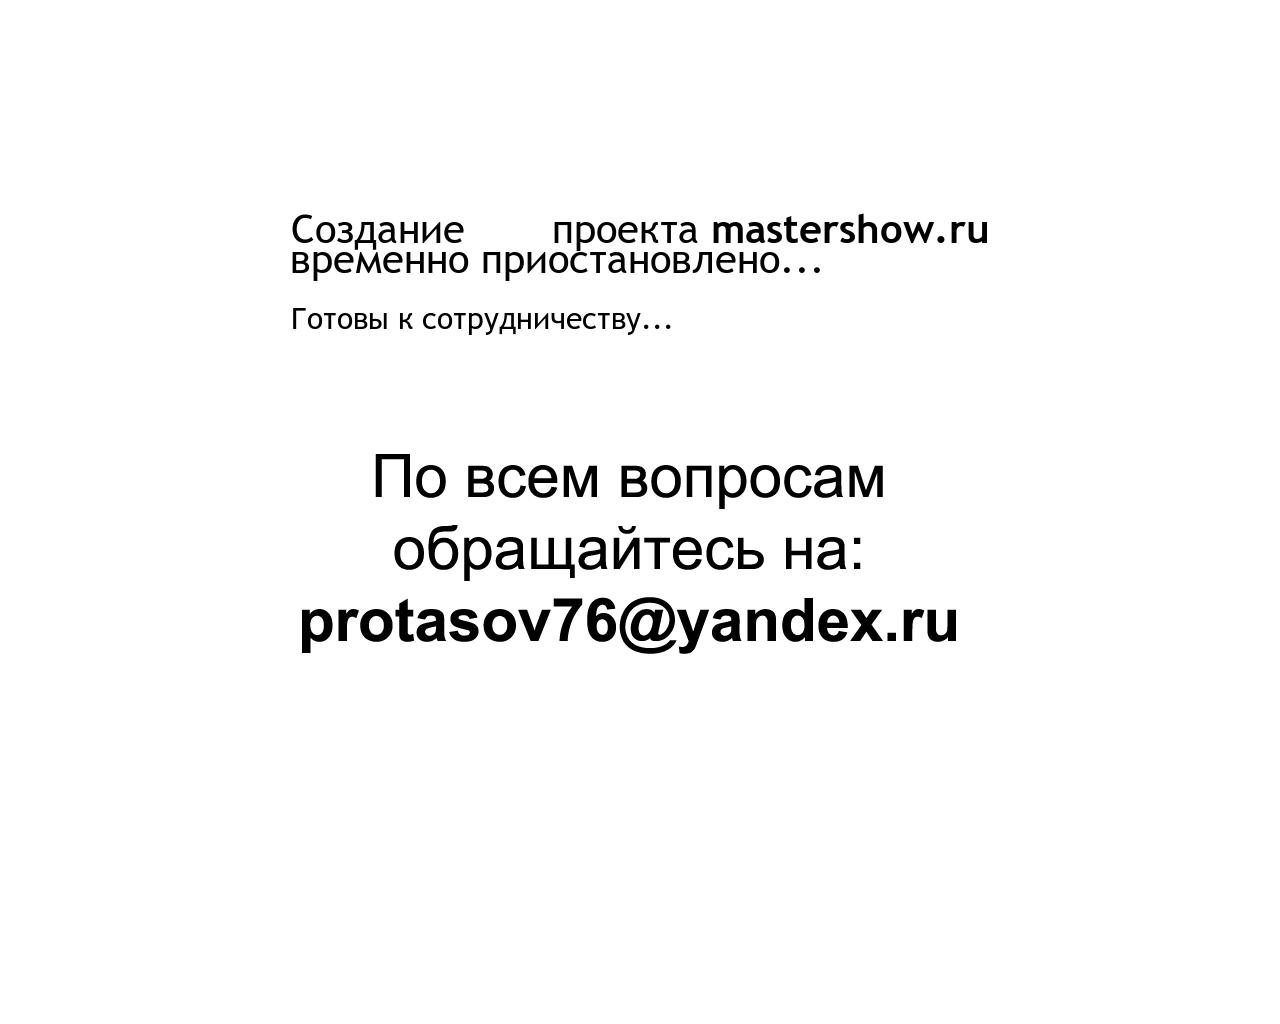 Изображение сайта mastershow.ru в разрешении 1280x1024